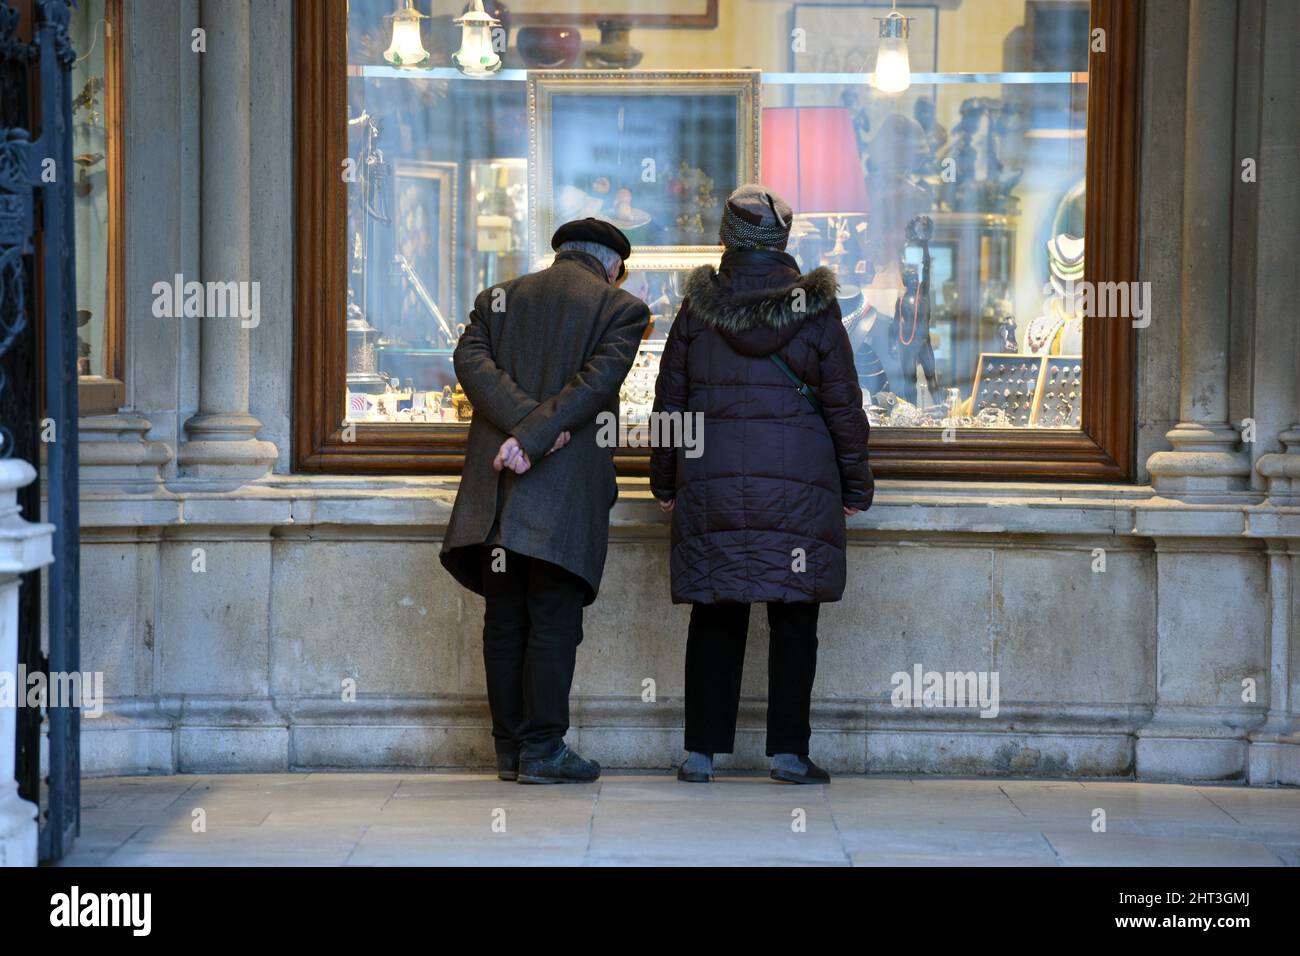 Zwei ältere Personen vor einem Schaufenster in der Wiener Innenstadt, Österreich - due anziani di fronte a una vetrina nel centro di Vienna, Au Foto Stock